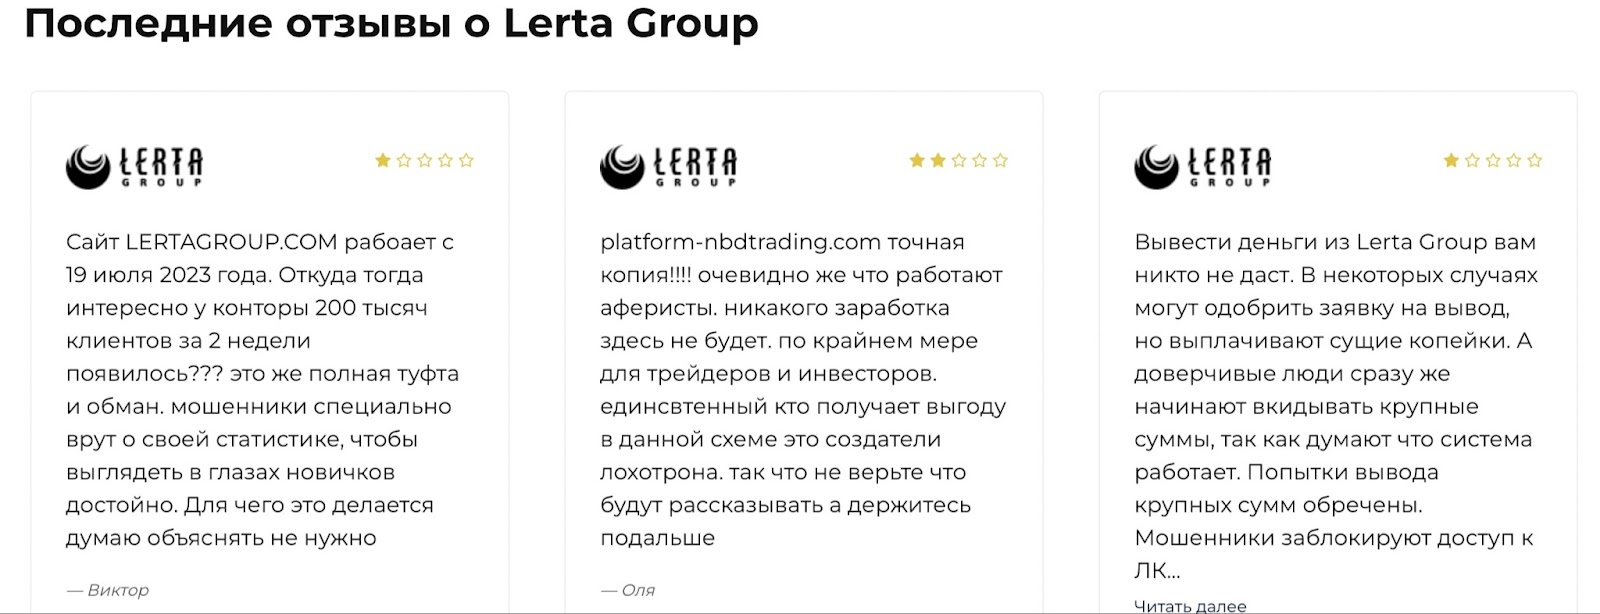 Lerta Group: отзывы клиентов о работе компании в 2023 году